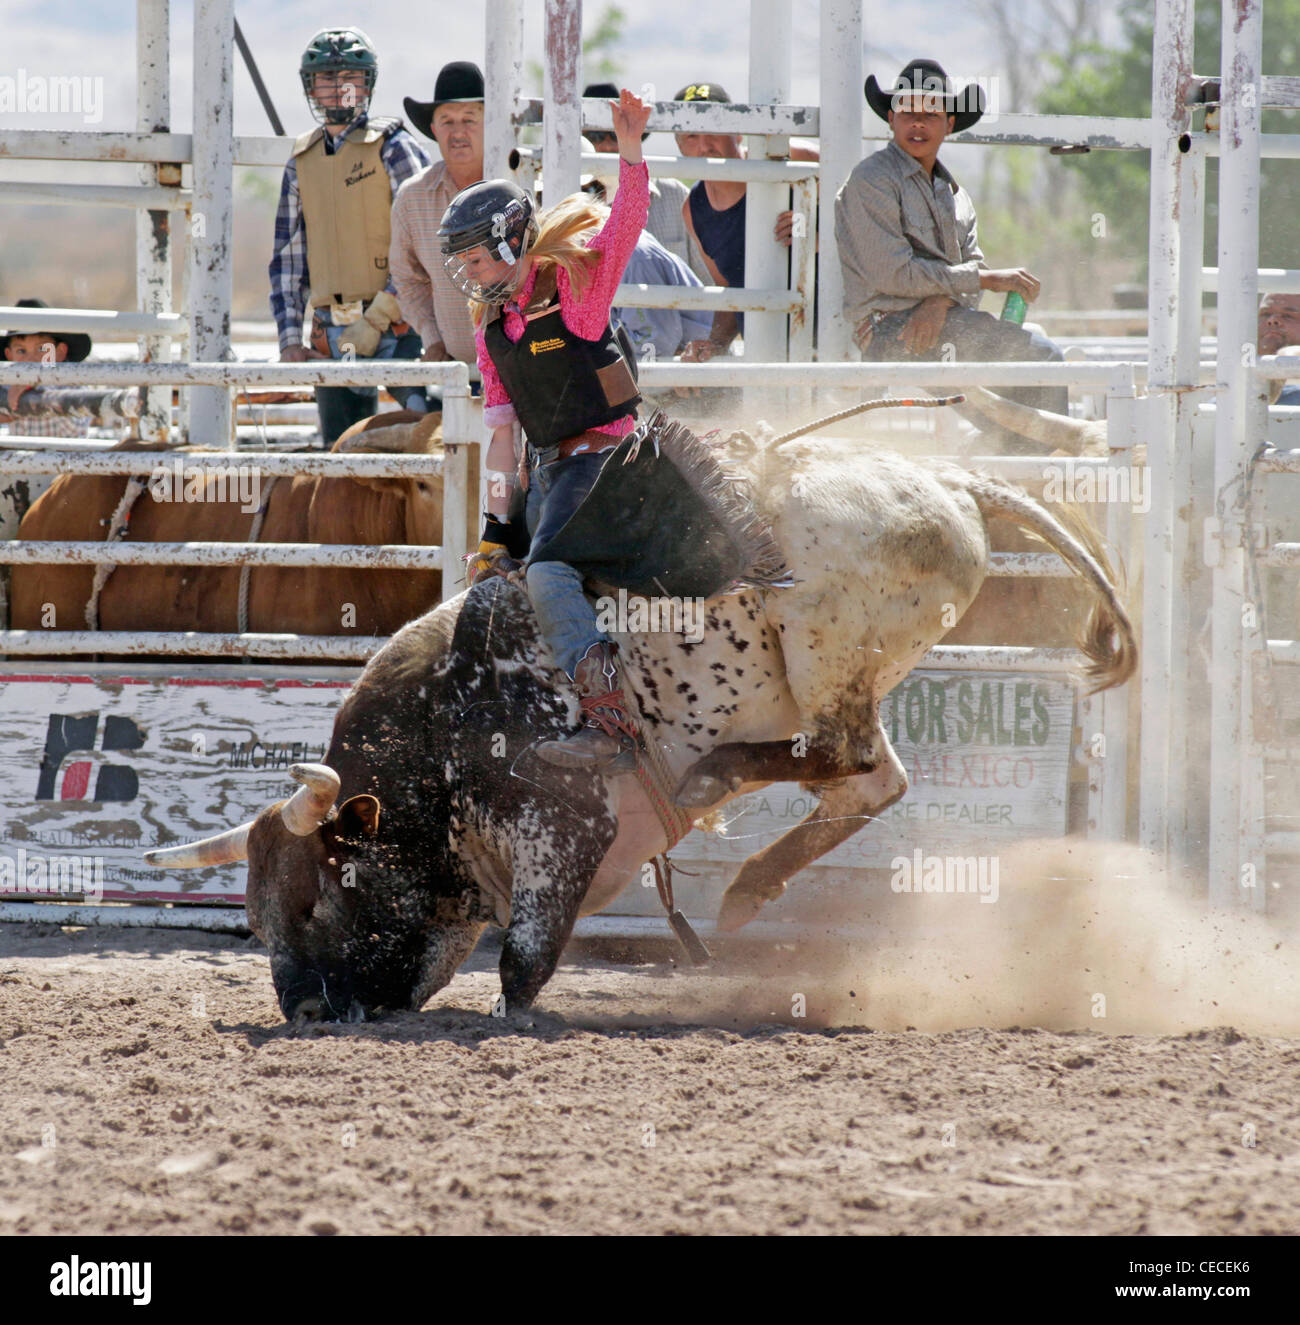 Socorro, Nuovo Messico, Stati Uniti d'America. Donna prendendo parte al toro di equitazione concorrenza durante il rodeo annuale. Foto Stock